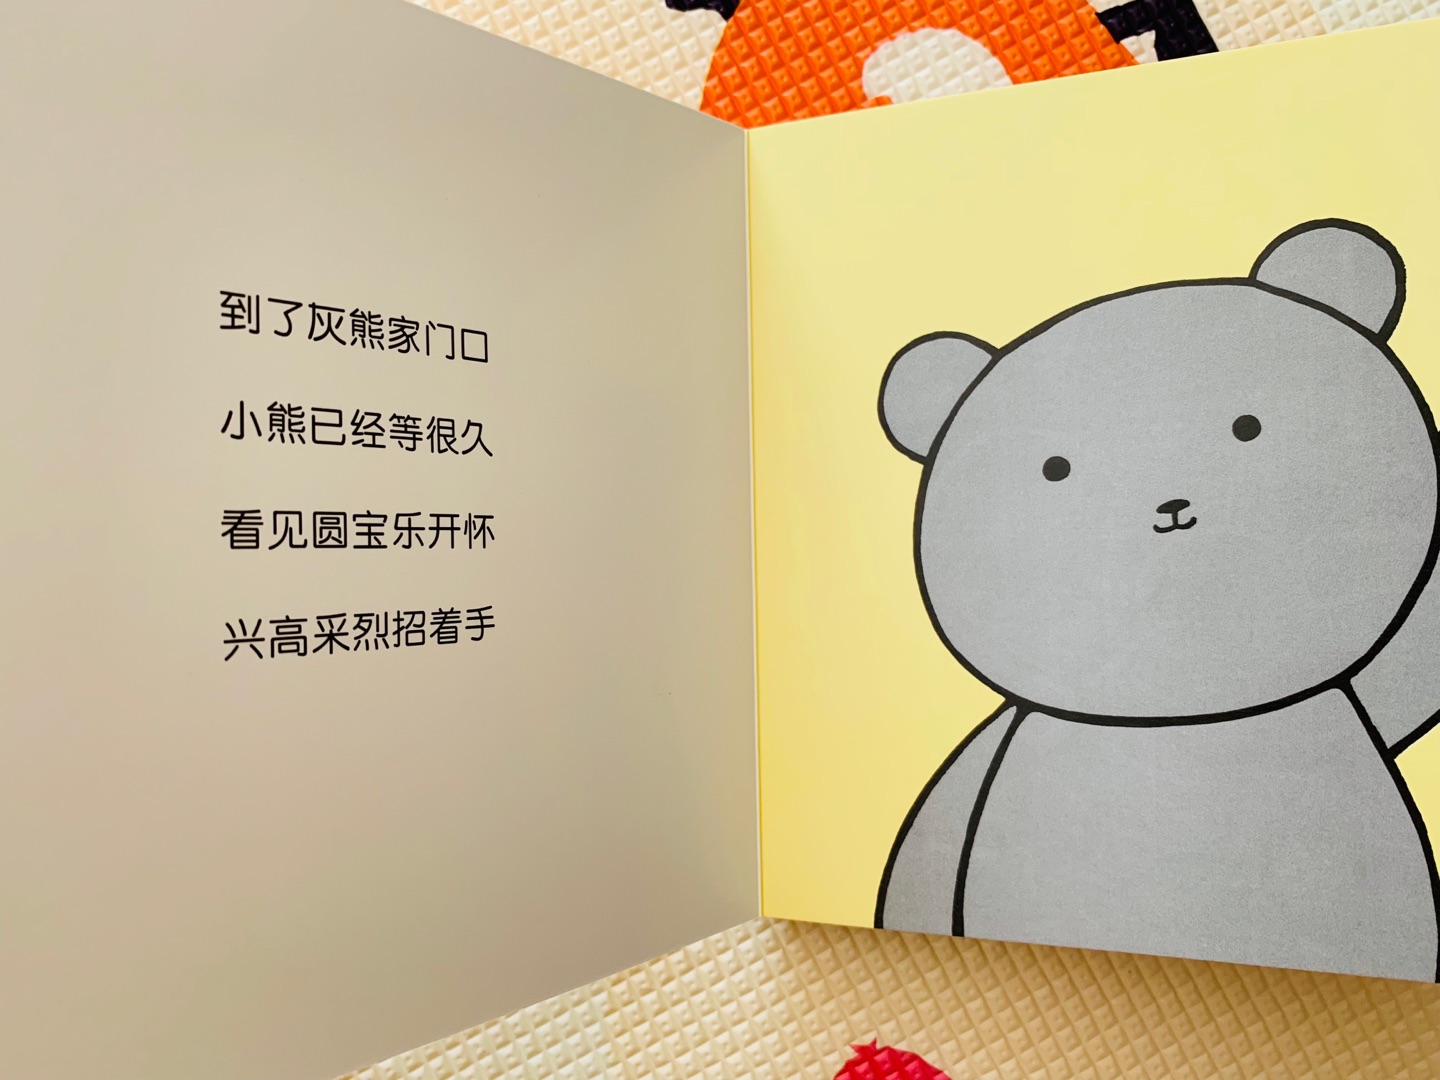 这套精美的纸板书内页漂亮极了，低幼好绘本，无味道，主角是中国国宝大熊猫，颜色鲜艳，从内容上看，一岁半左右到三岁佳，六个贴近生活的话题，其中想象力恰好适合1-3岁宝宝的想象力发育。